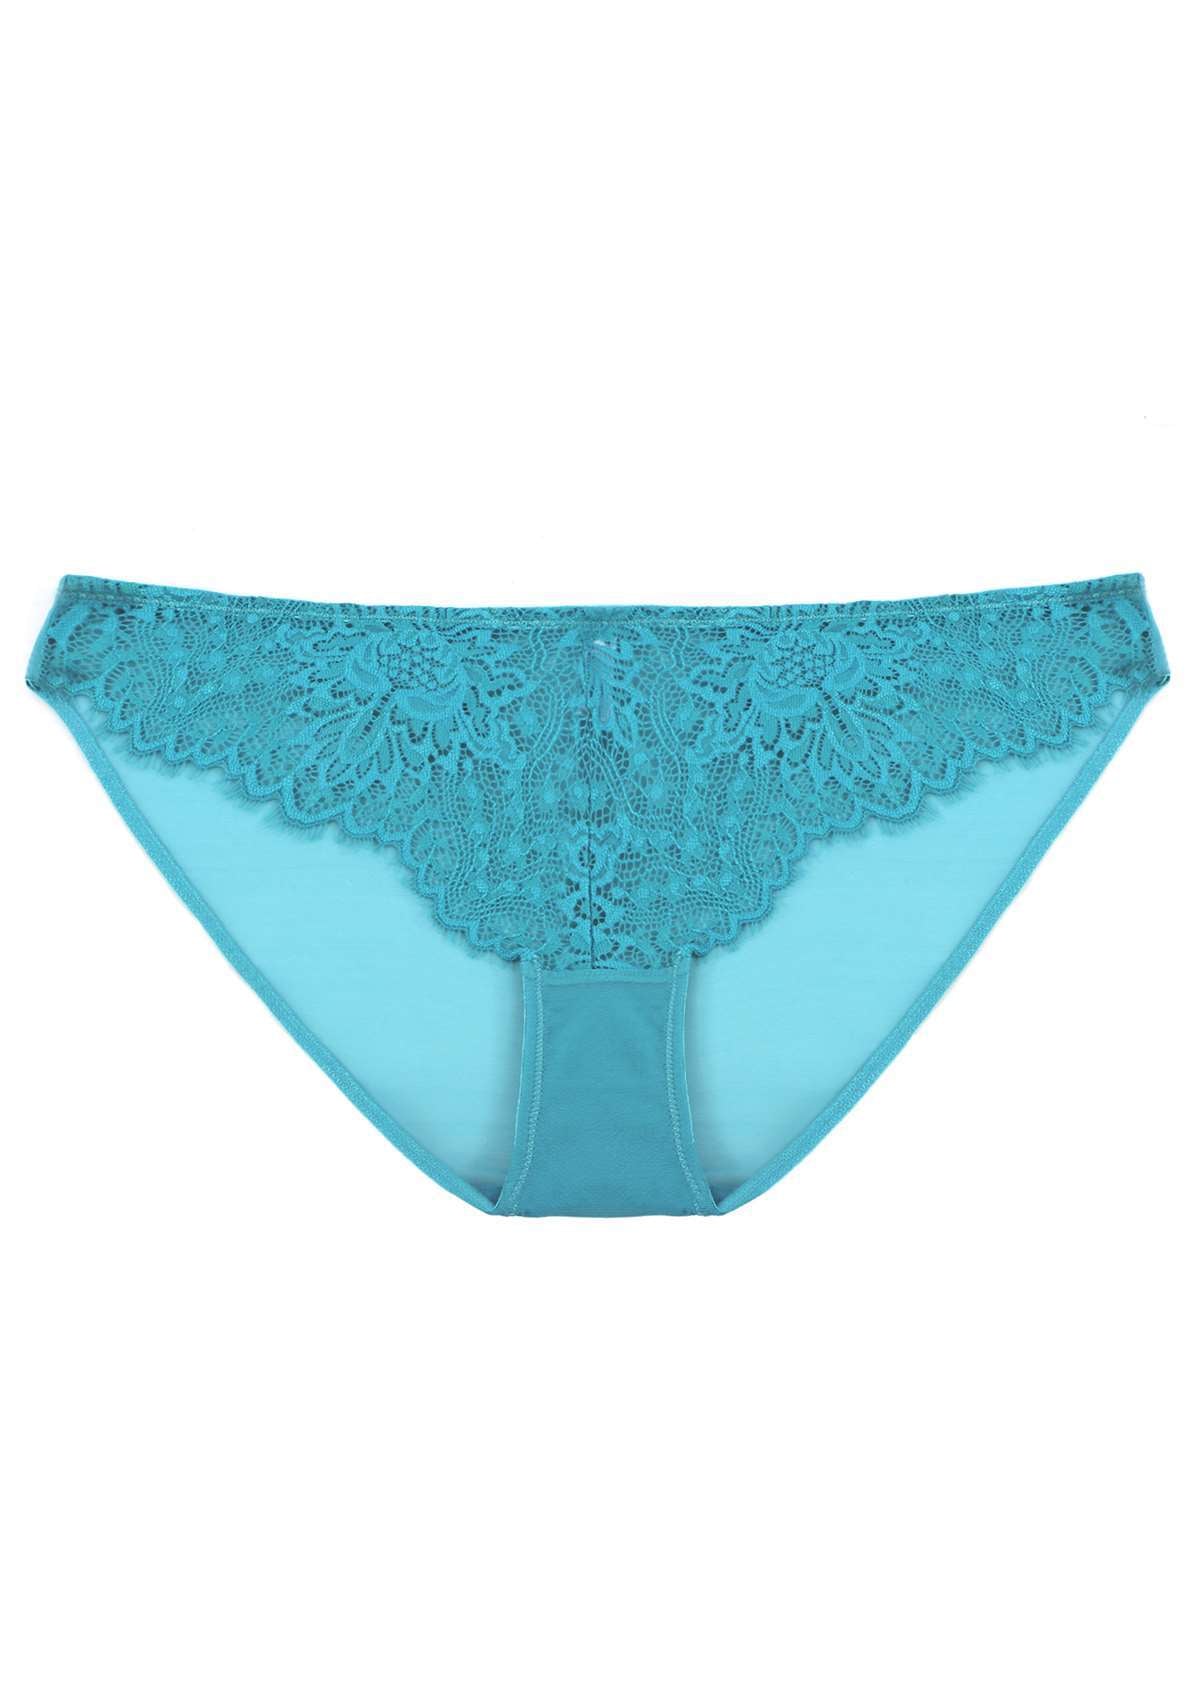 HSIA Sunflower Exquisite Lace Bikini Underwear - XXXL / Purple